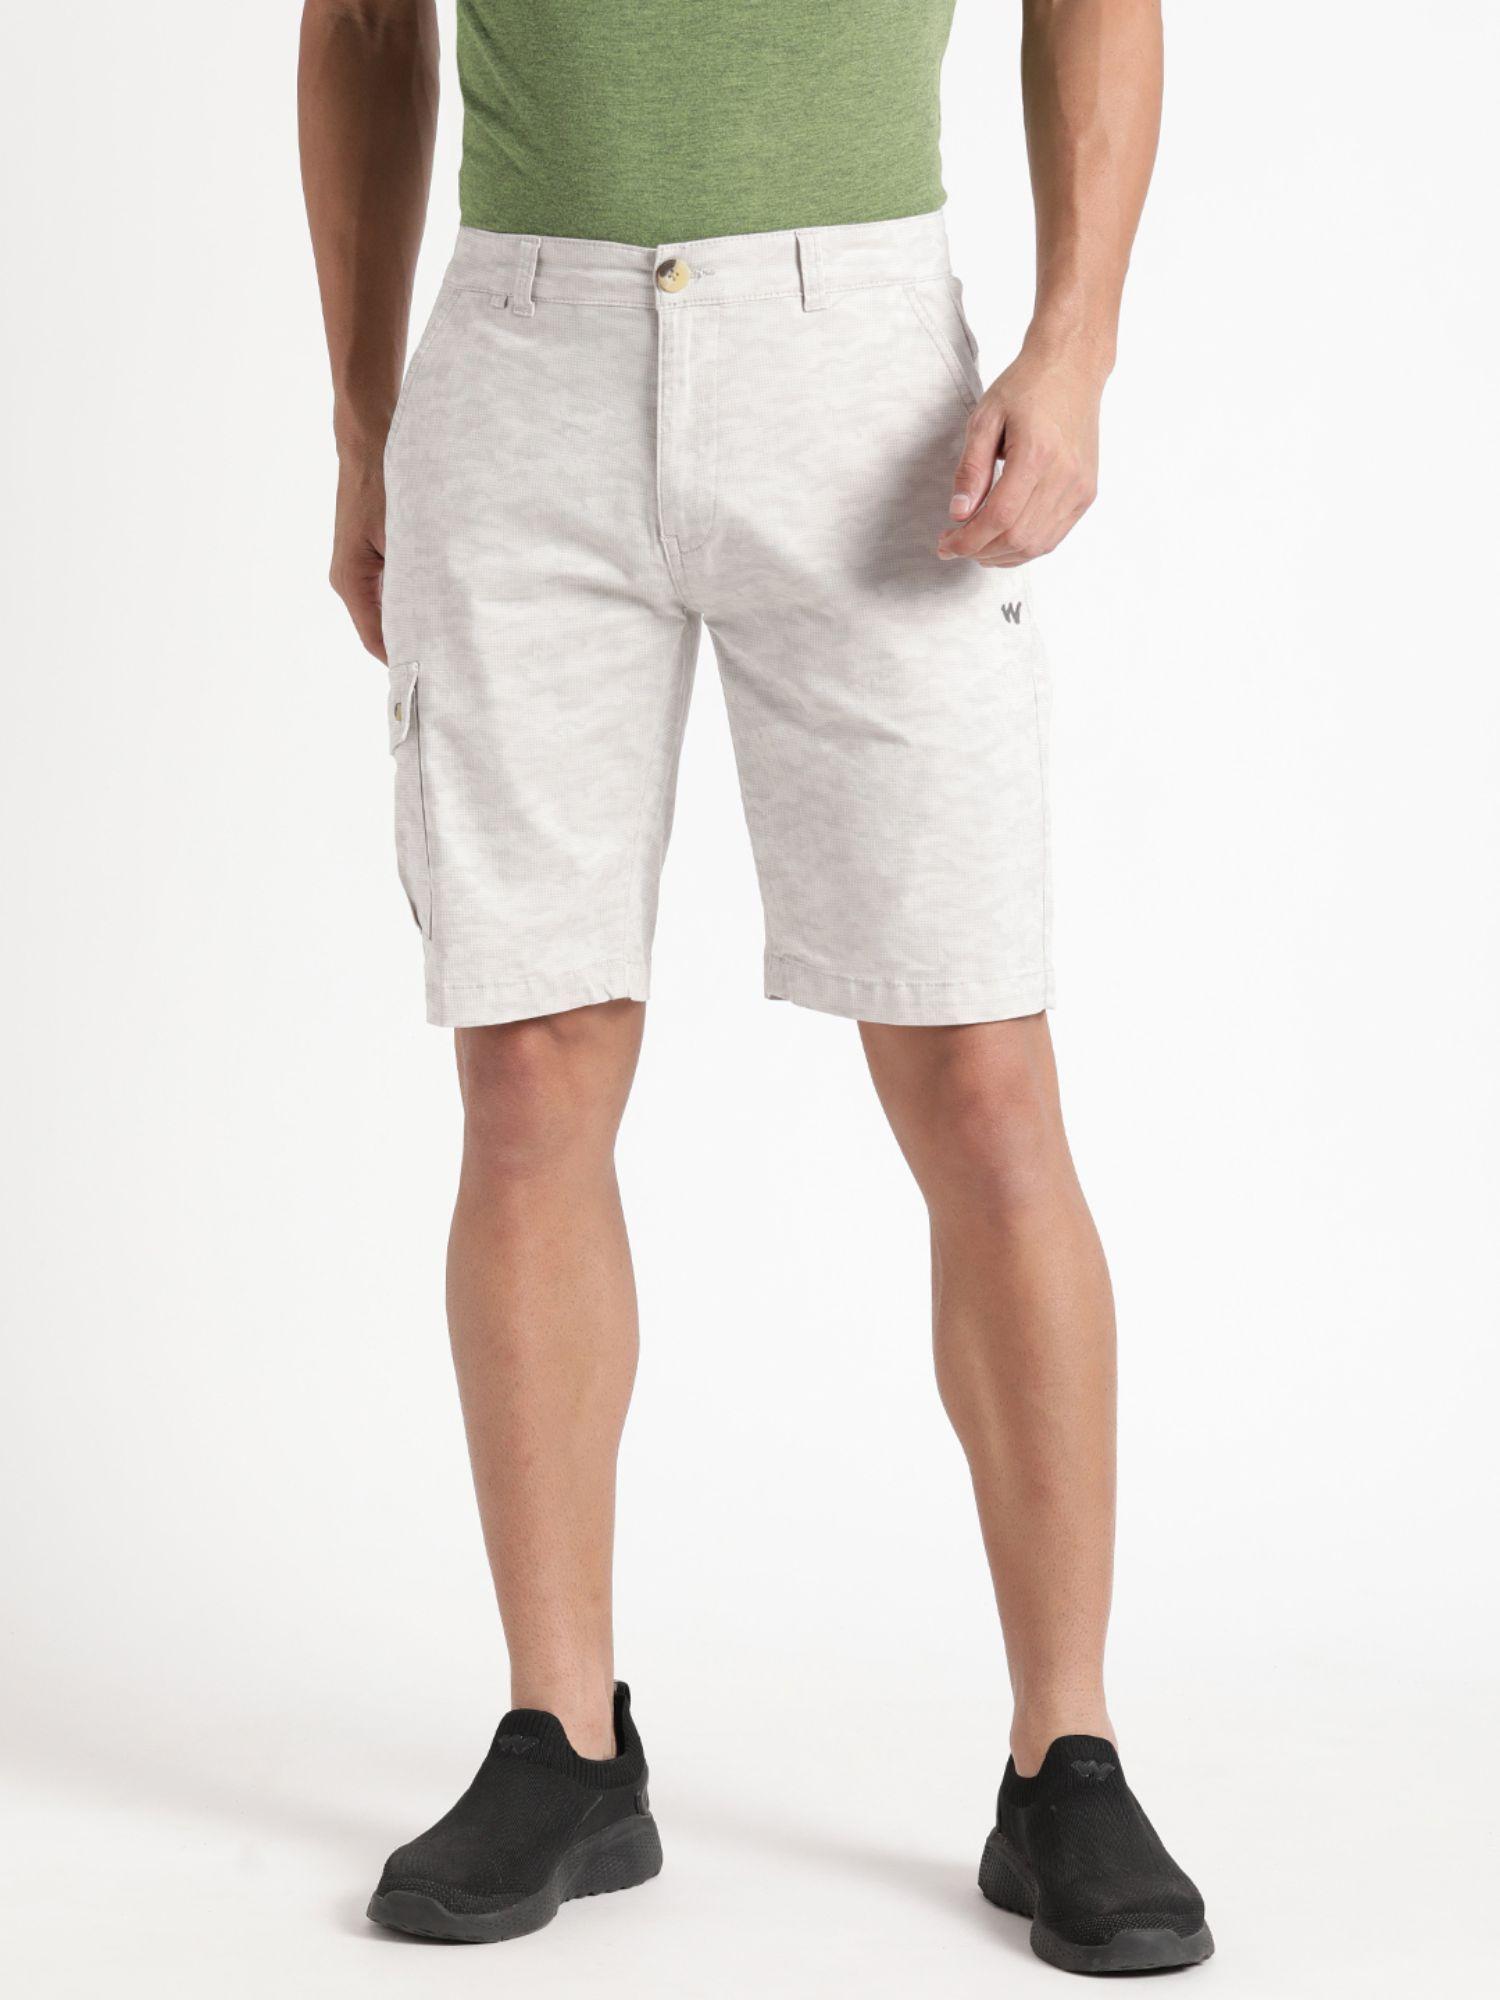 men-regular-fit-nylon-fabric-camo-printed-anti-odor-shorts-grey